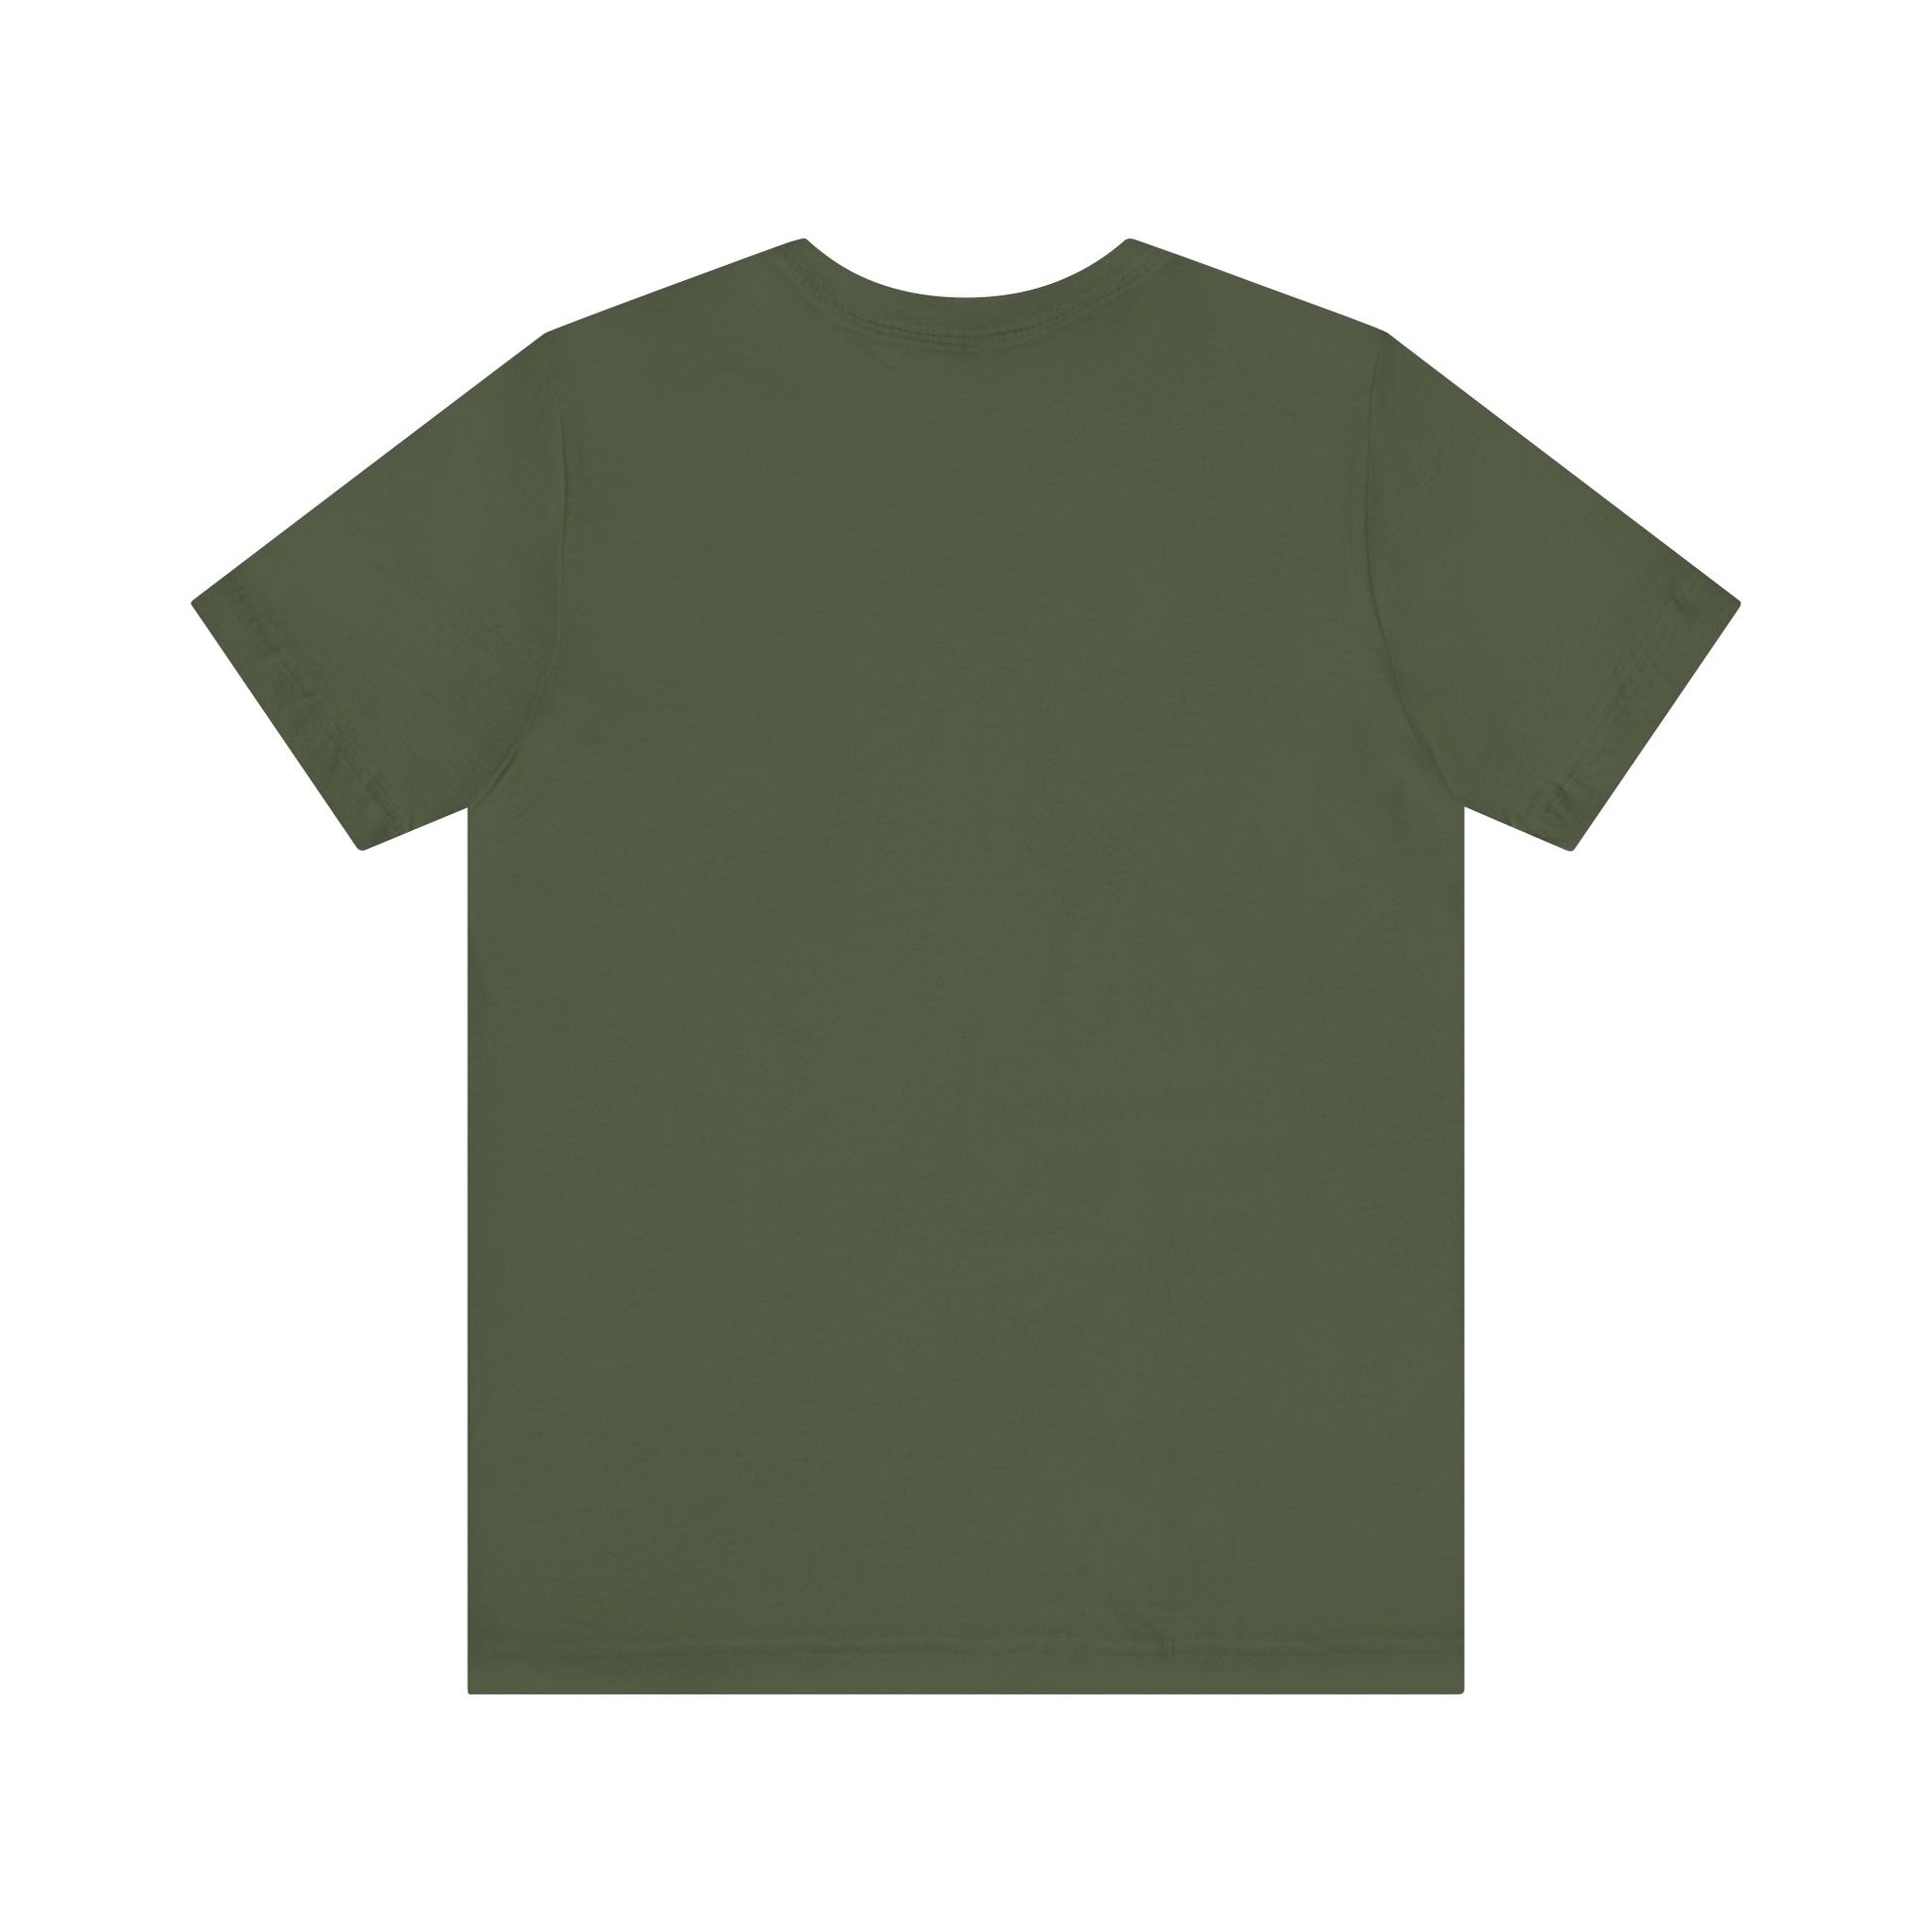 Big Island Clothes - Premium T-shirts from Hula La Hawaii - Starting at just $18! Shop now at Hula La Hawaii